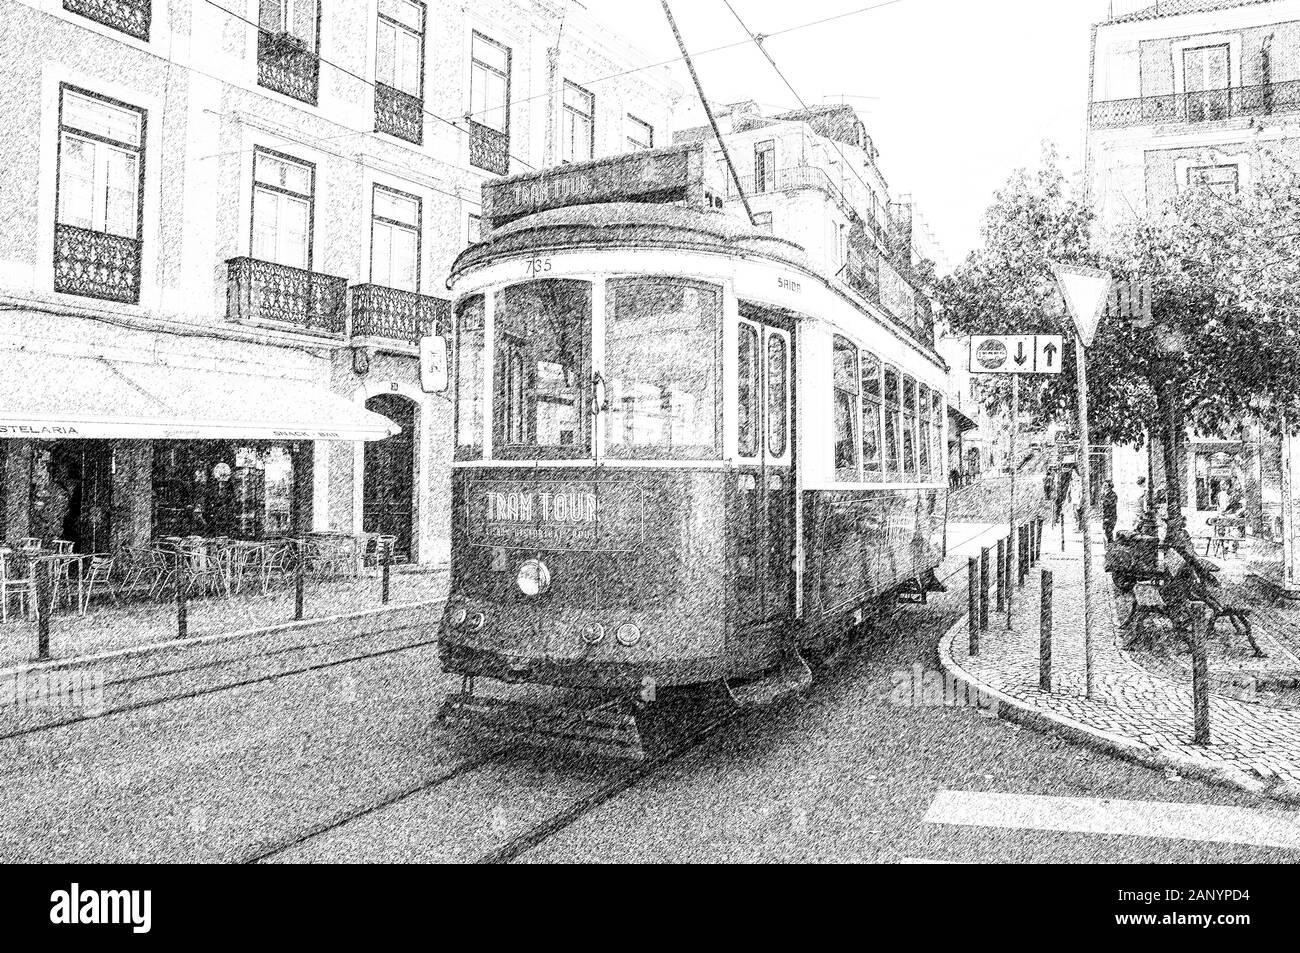 Immagine digitale migliorata di un tram verde nelle strette strade affollate di Lisbona, Portogallo Foto Stock